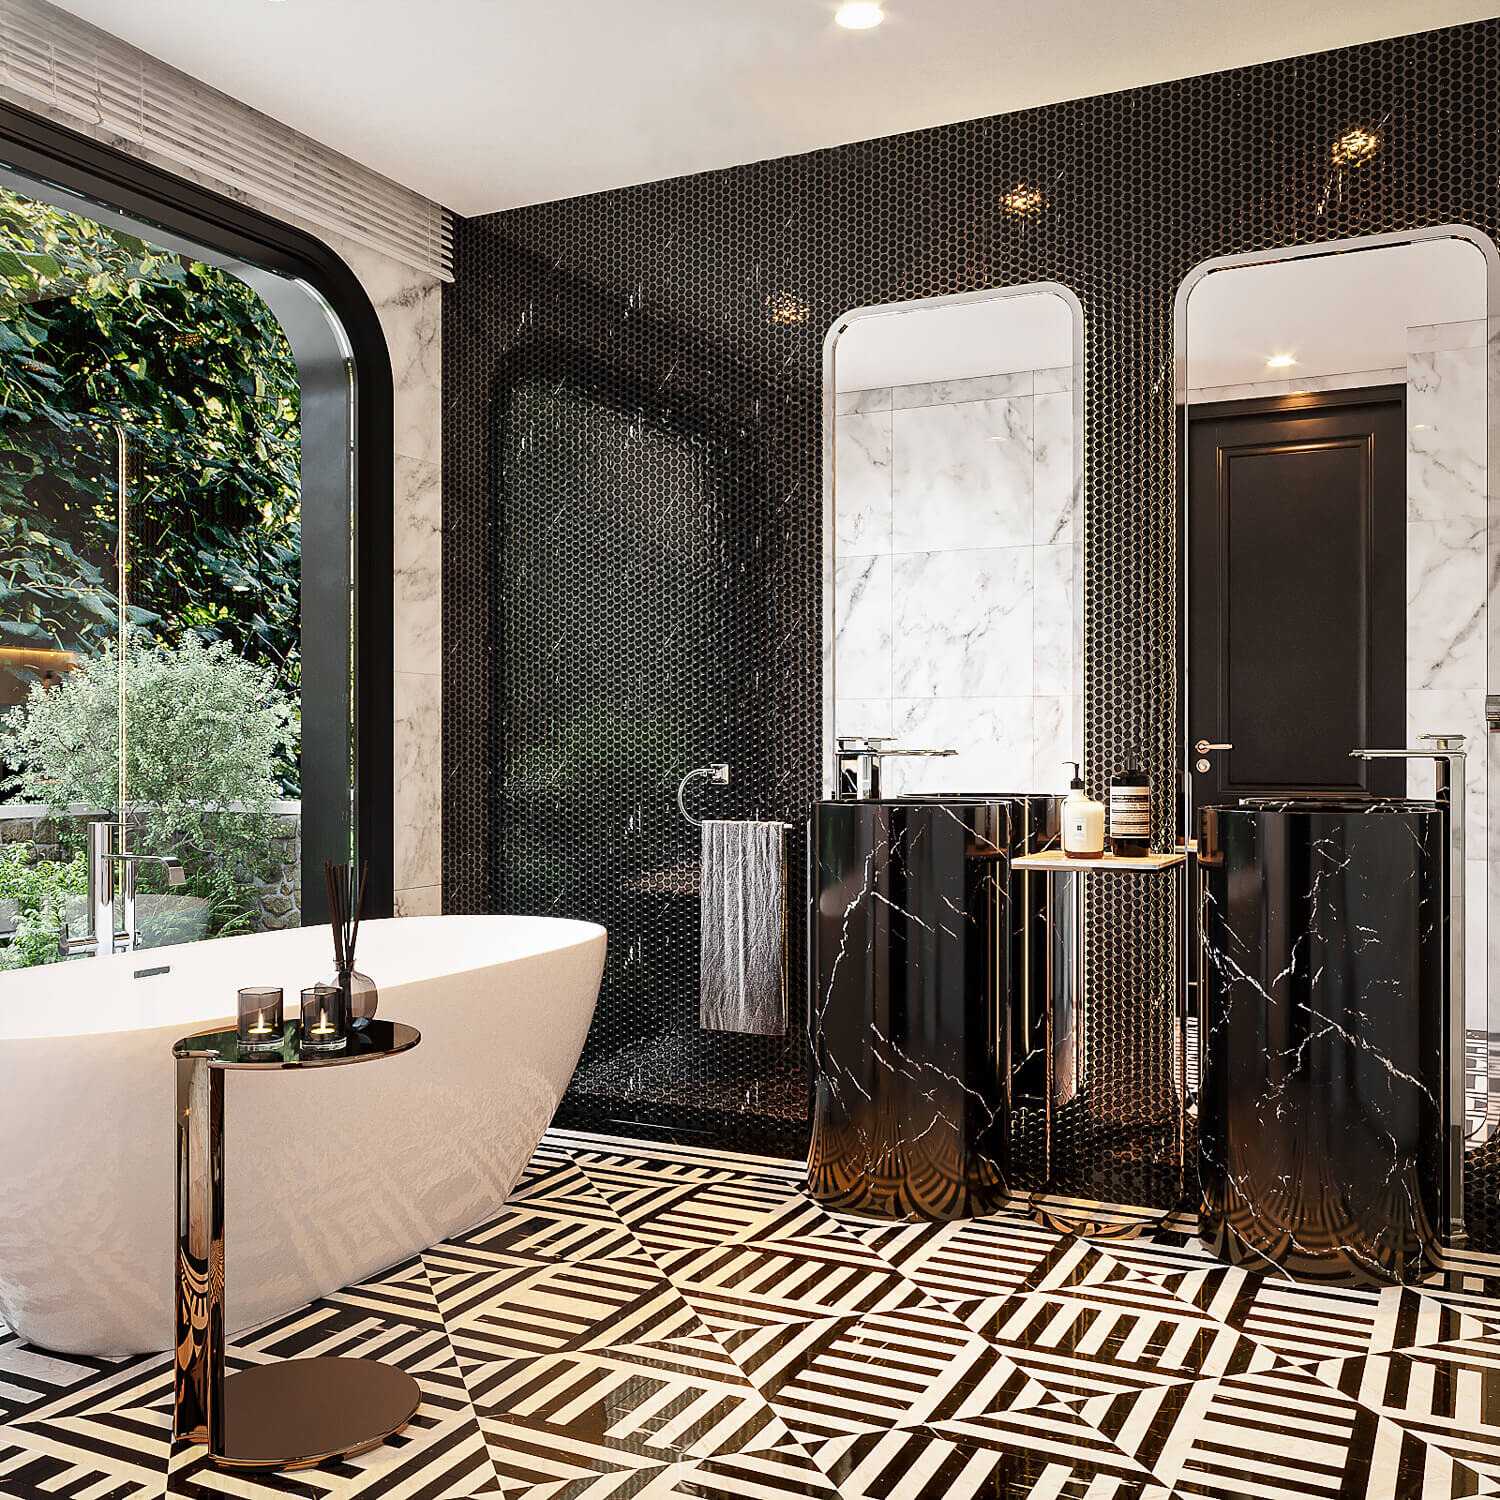 Phòng tắm Luxury sử dụng chất liệu gạch mosaic 2 màu đen trắng mang đến nét đẹp mới mẻ cho không gian